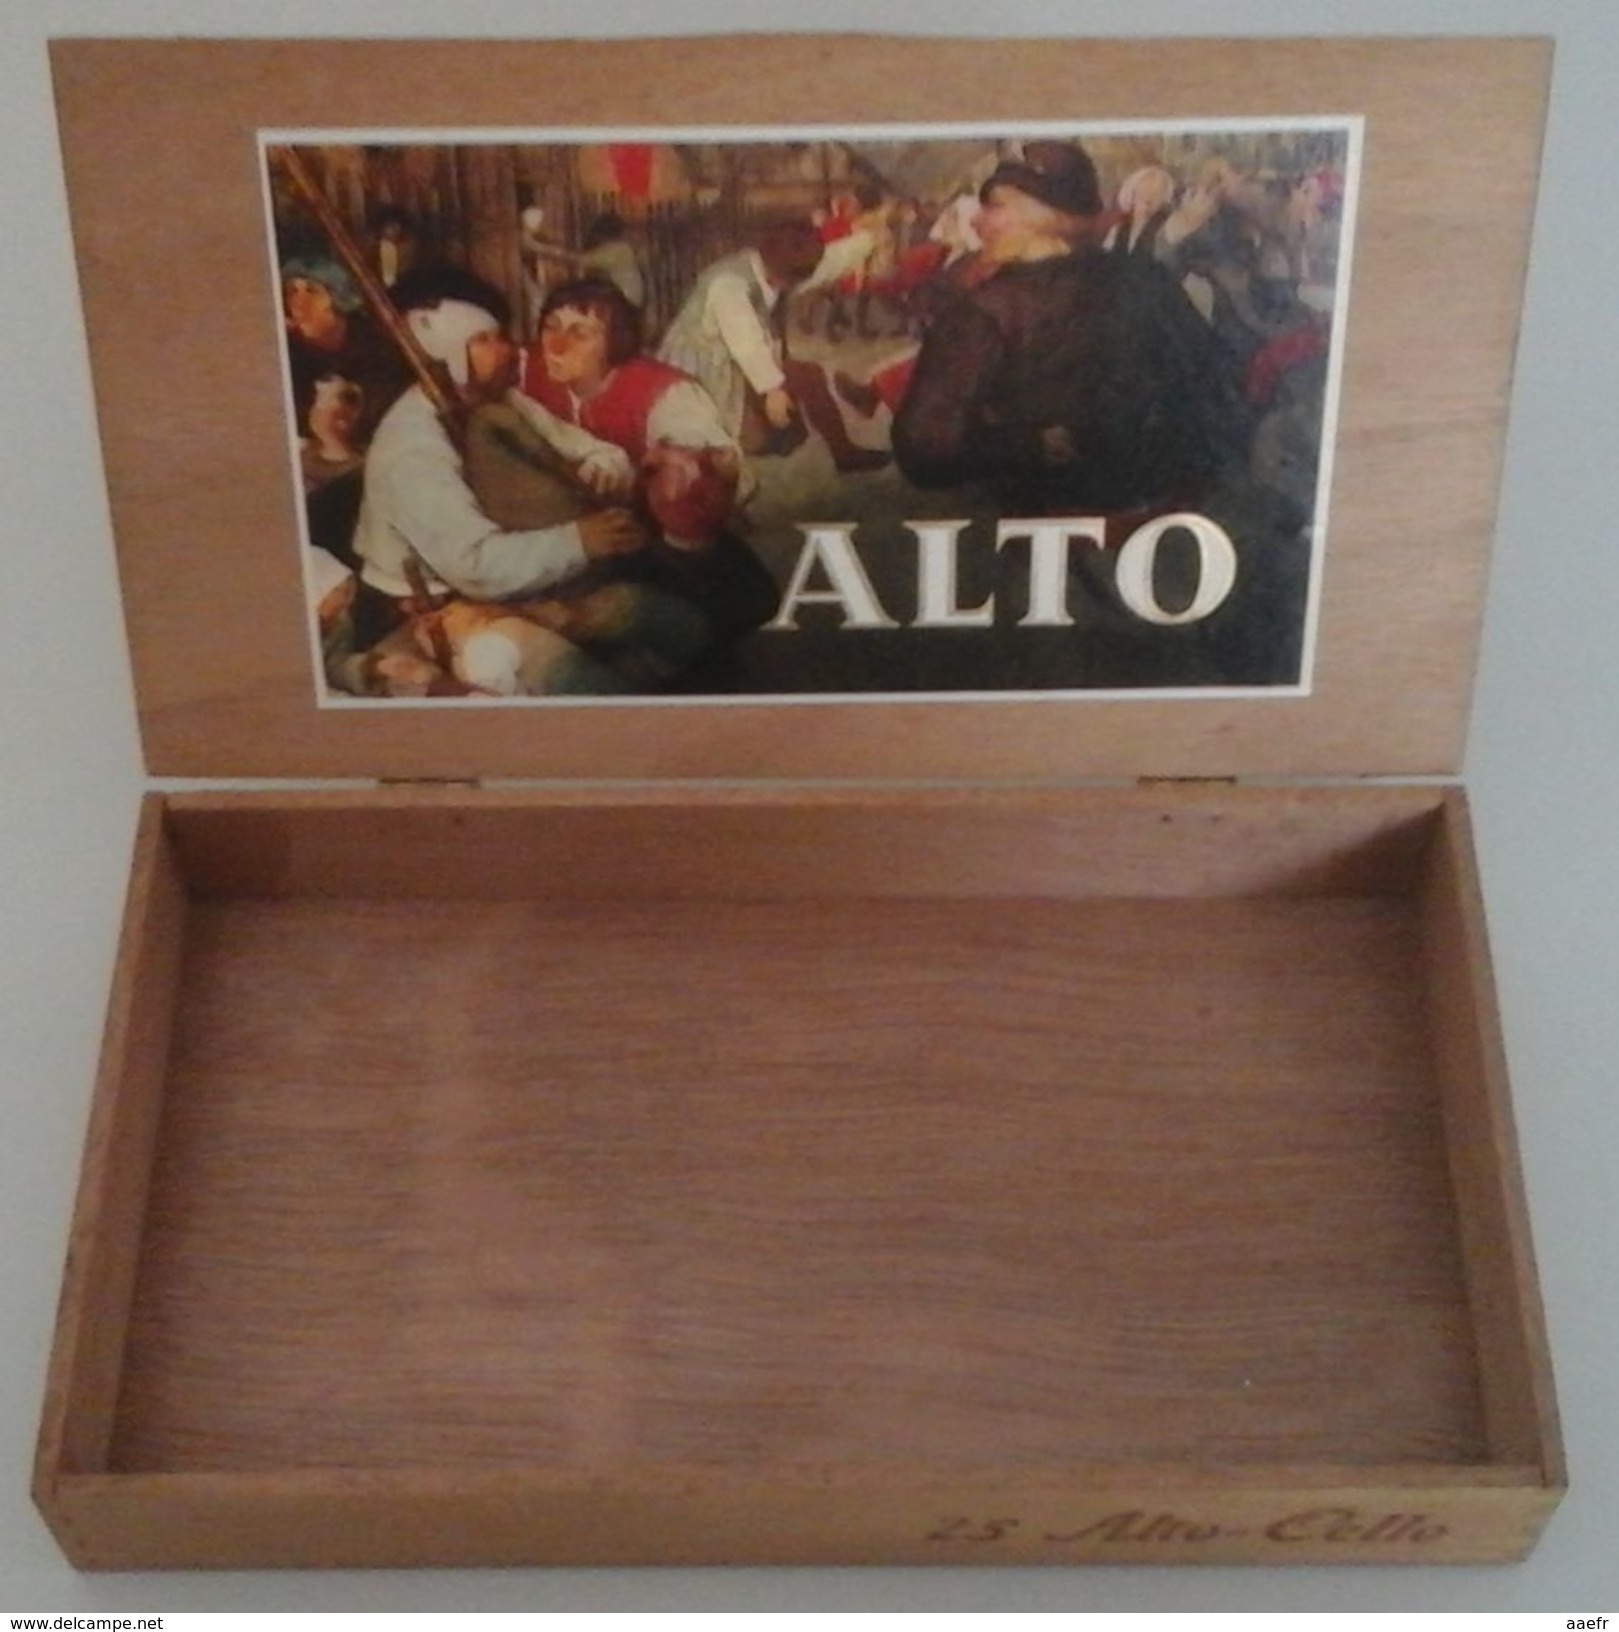 Boîte à Cigares En Bois ALTO - CELLO , Serie Brueghel - Boites à Tabac Vides